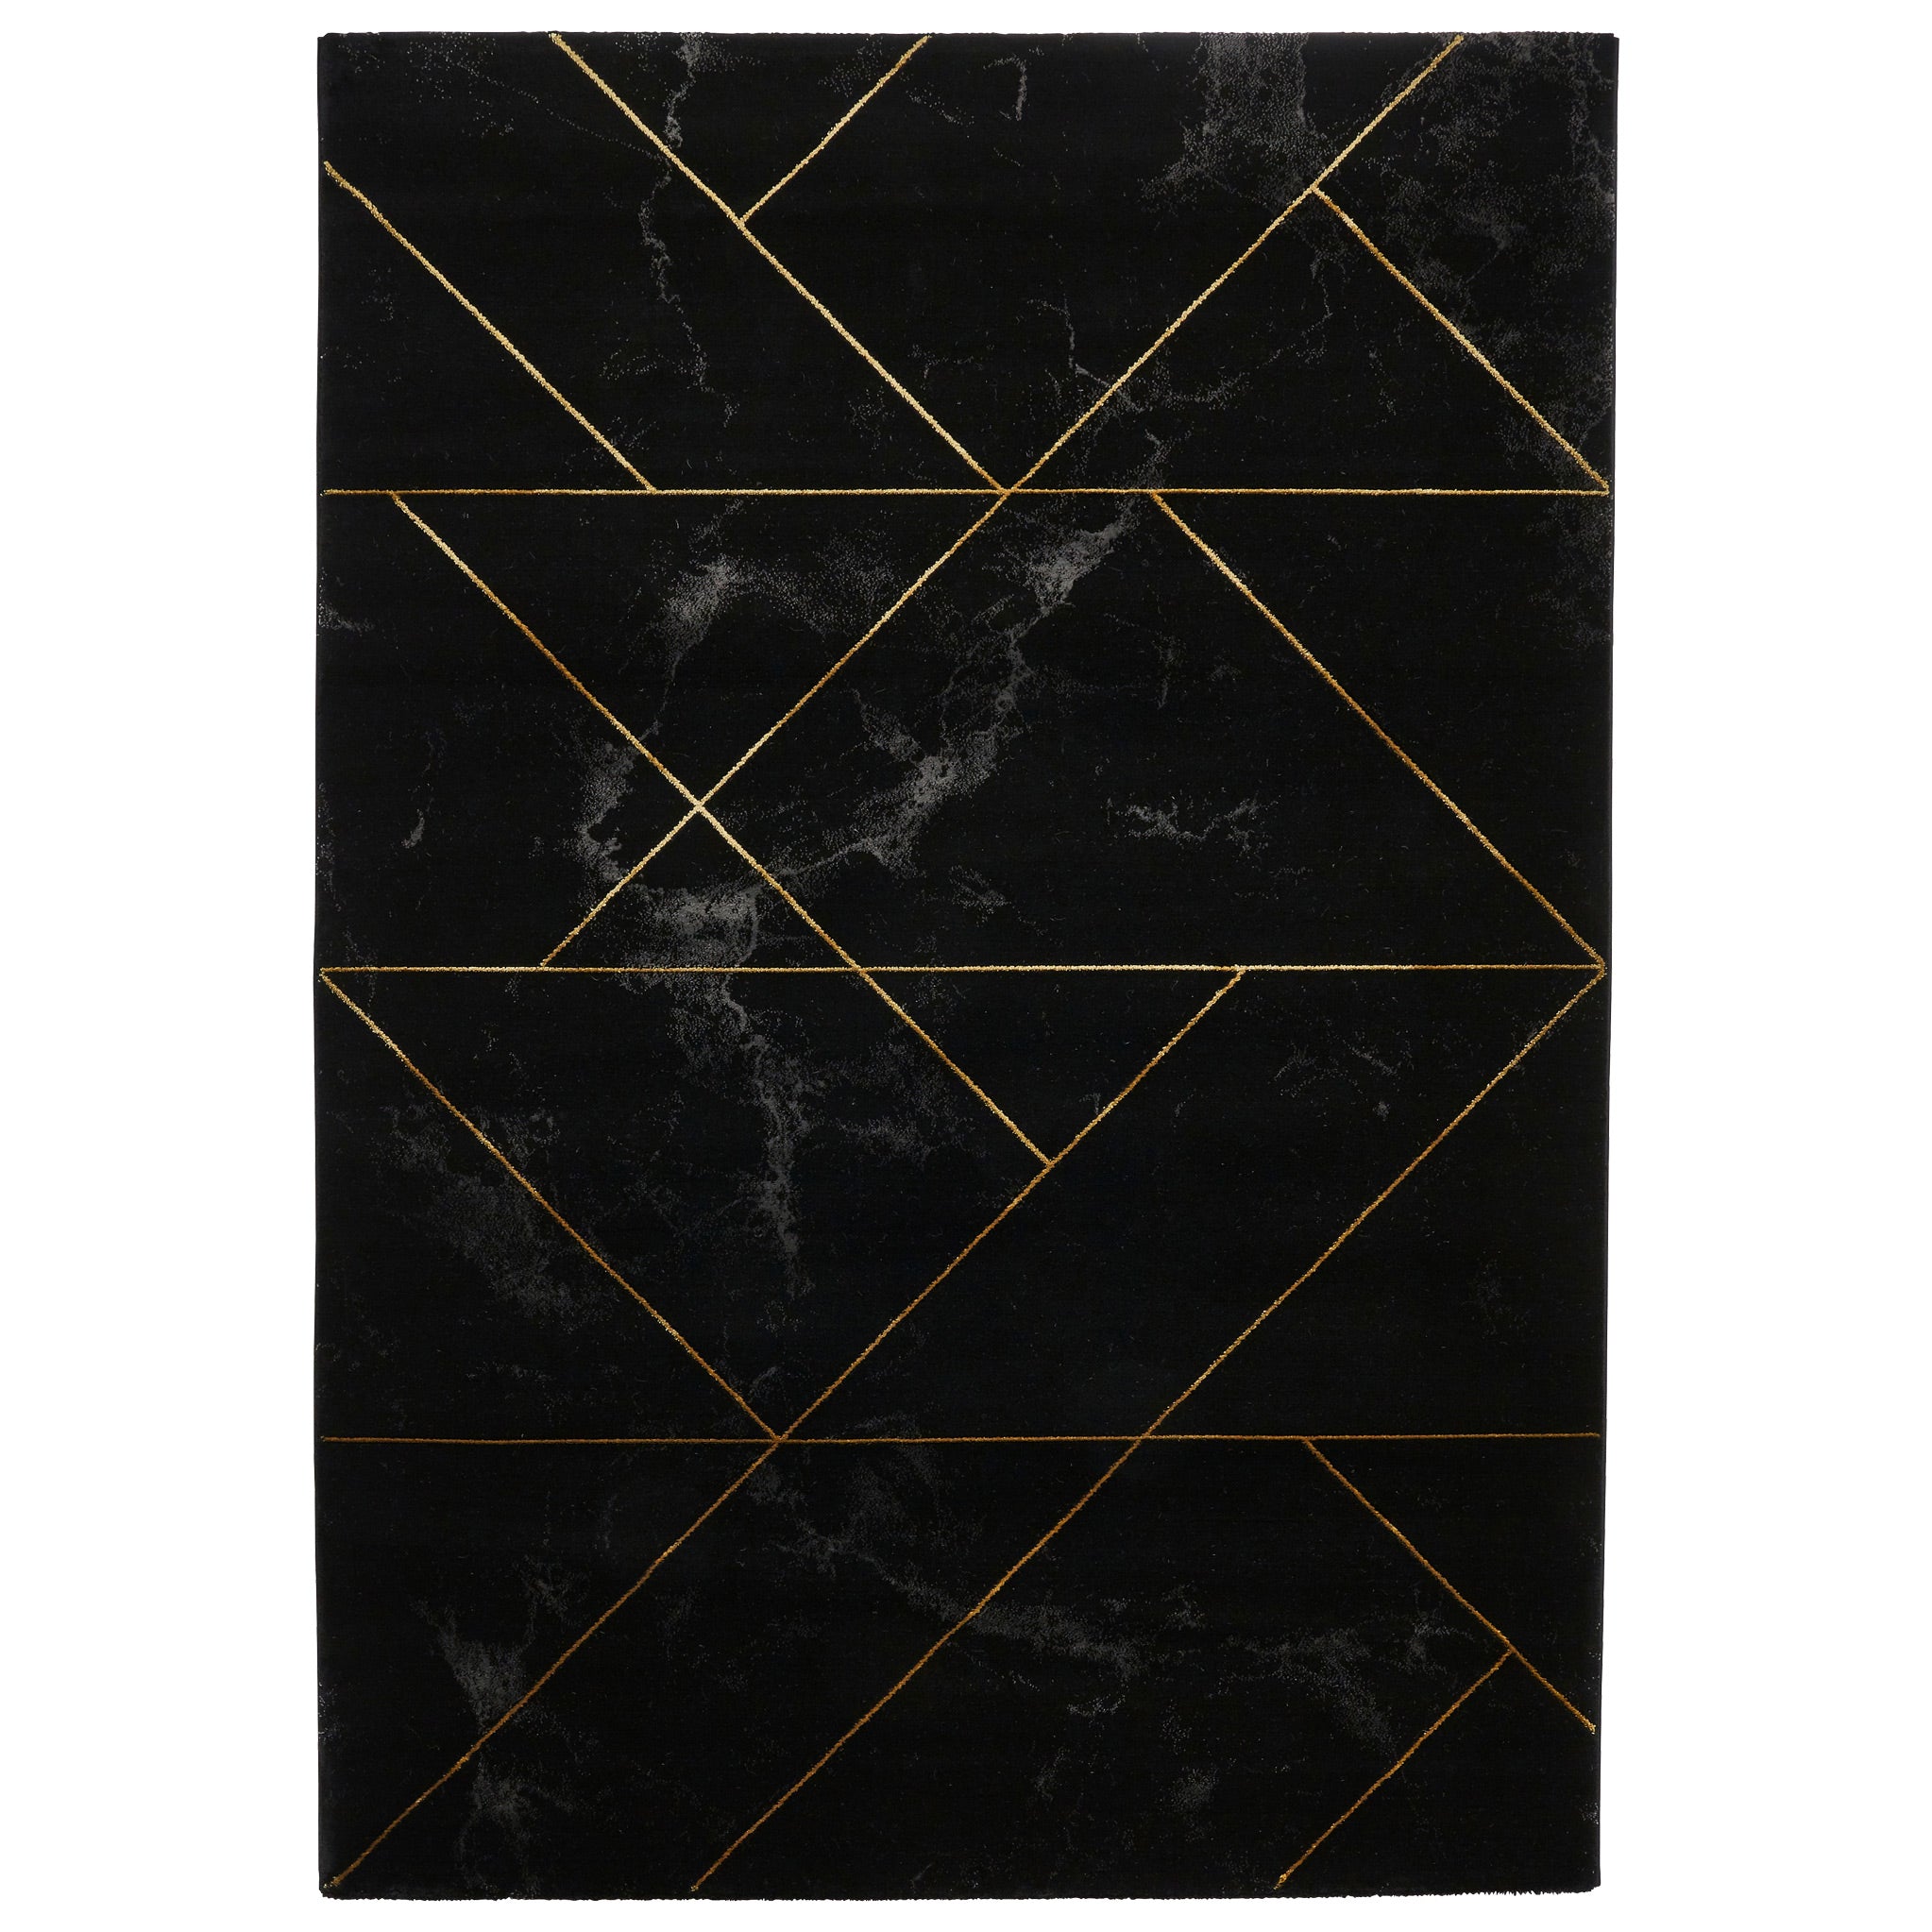 Fenway Black Gold Geometric Patterned Rug For Living Room Or Bedroom